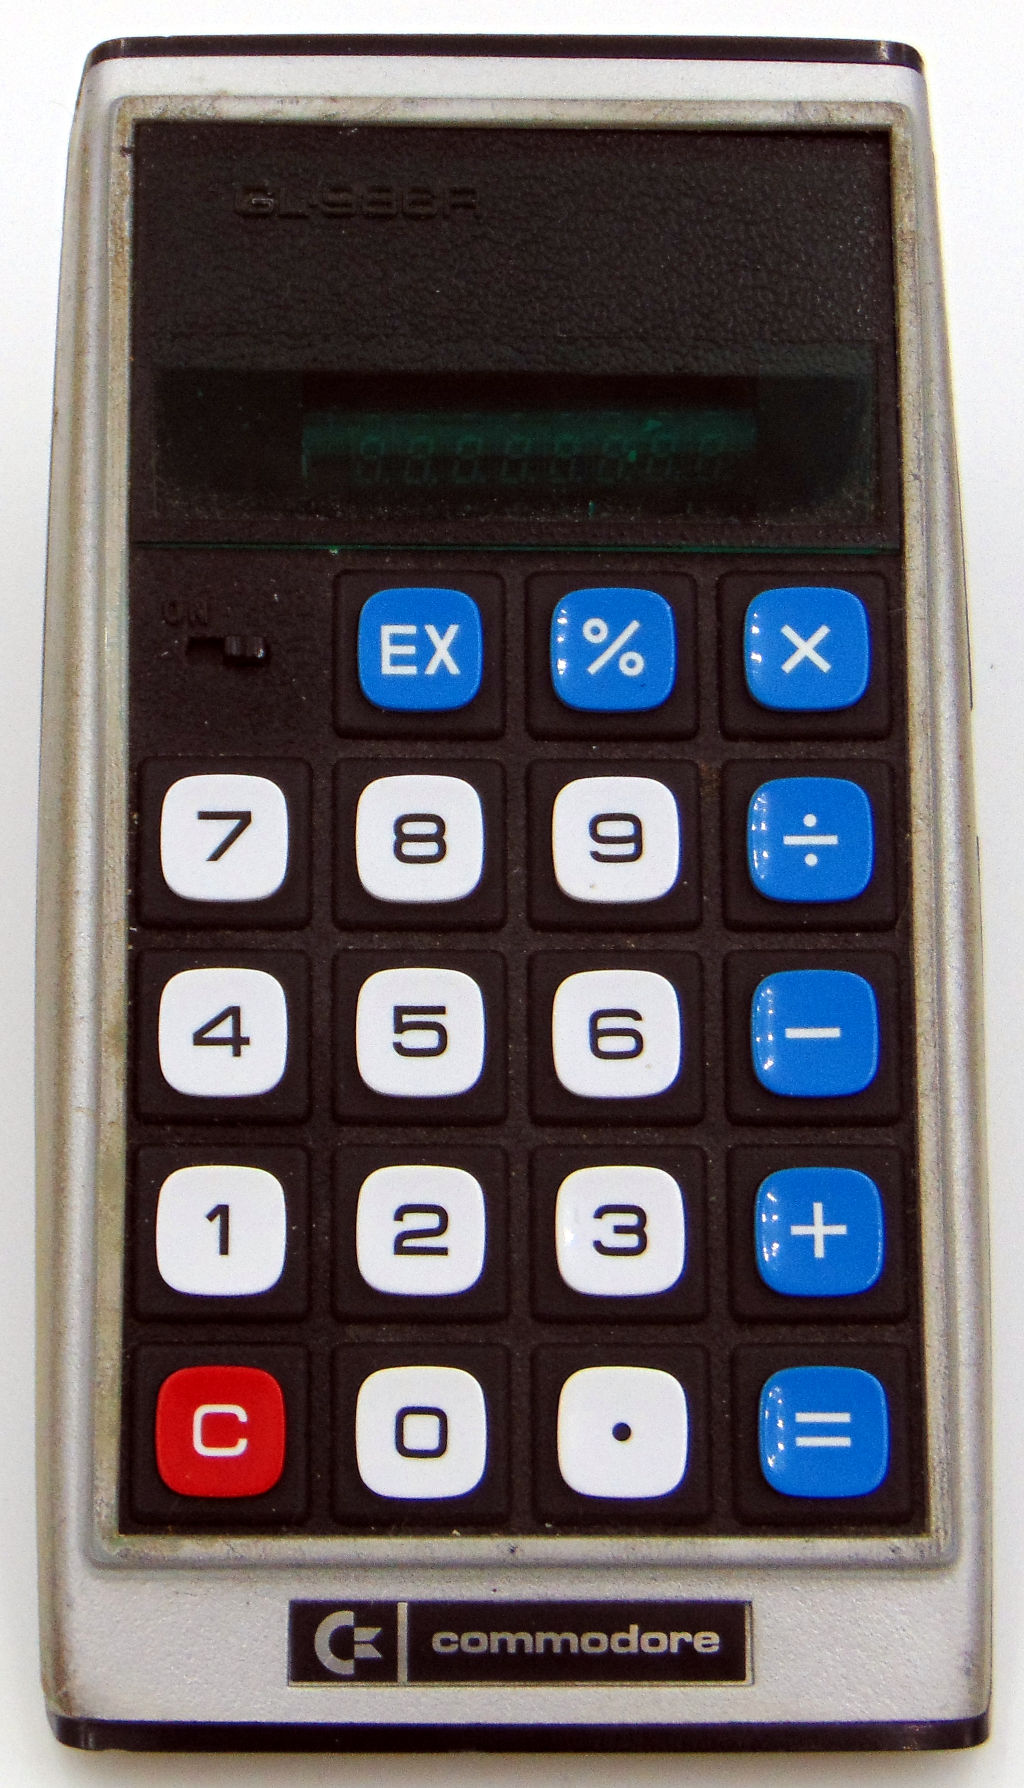 Commodore Calculator GL-986R Version 2